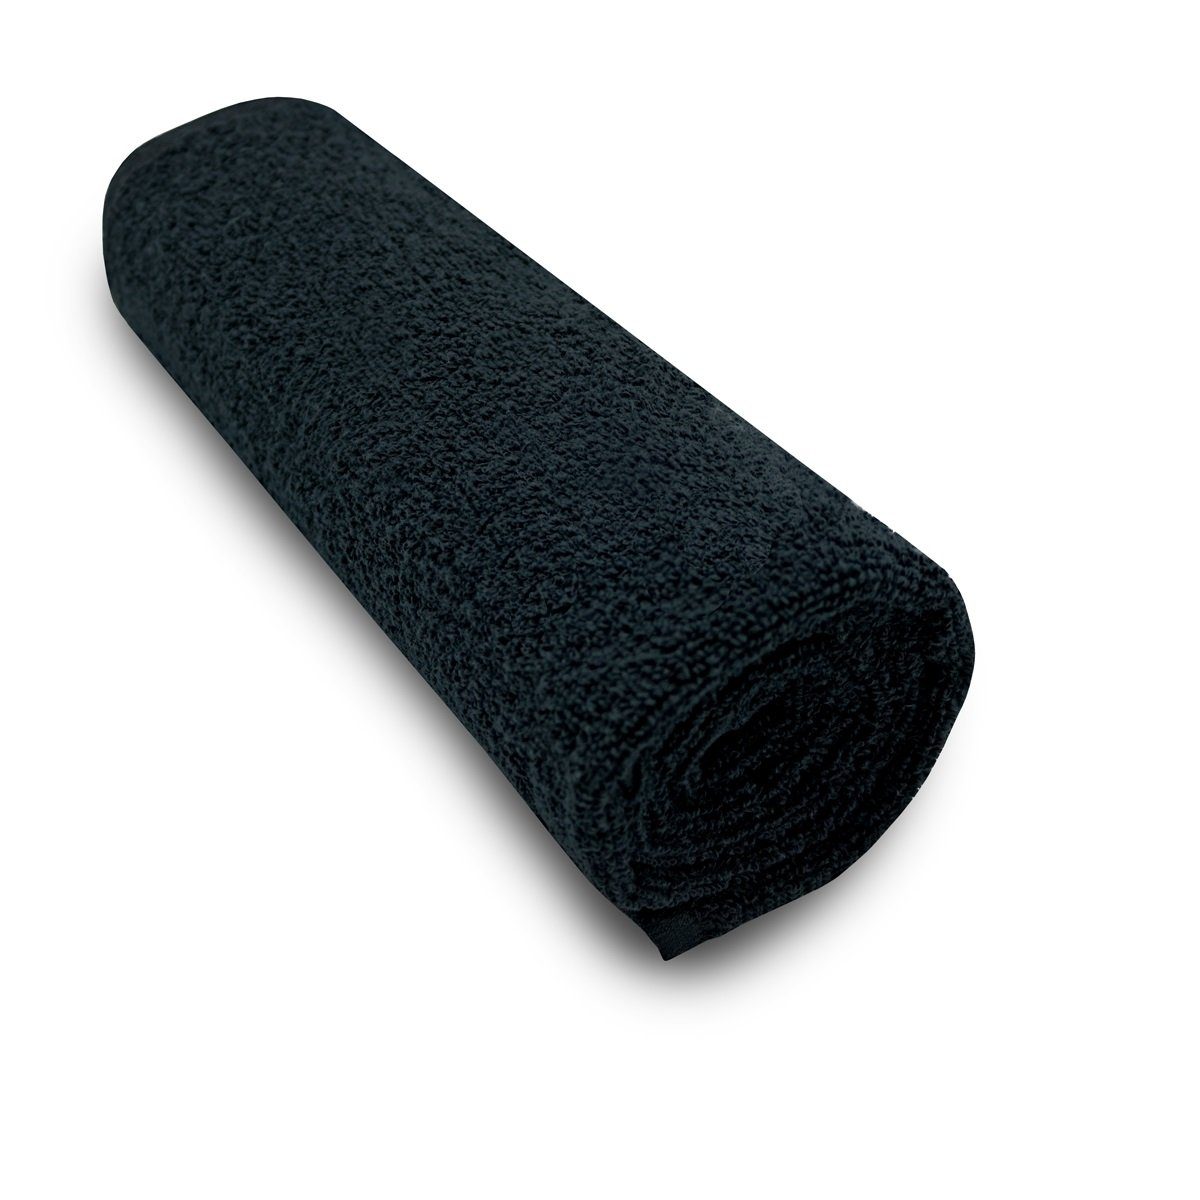 ARLI Handtuch Set Handtuch 100% hochwertigem Baumwolle klassischer schlicht aus Serie Handtücher mit (1-tlg) modern elegant Handtuchaufhänger, Baumwolle, Set Frottier praktisch Rohstoff Design schwarz